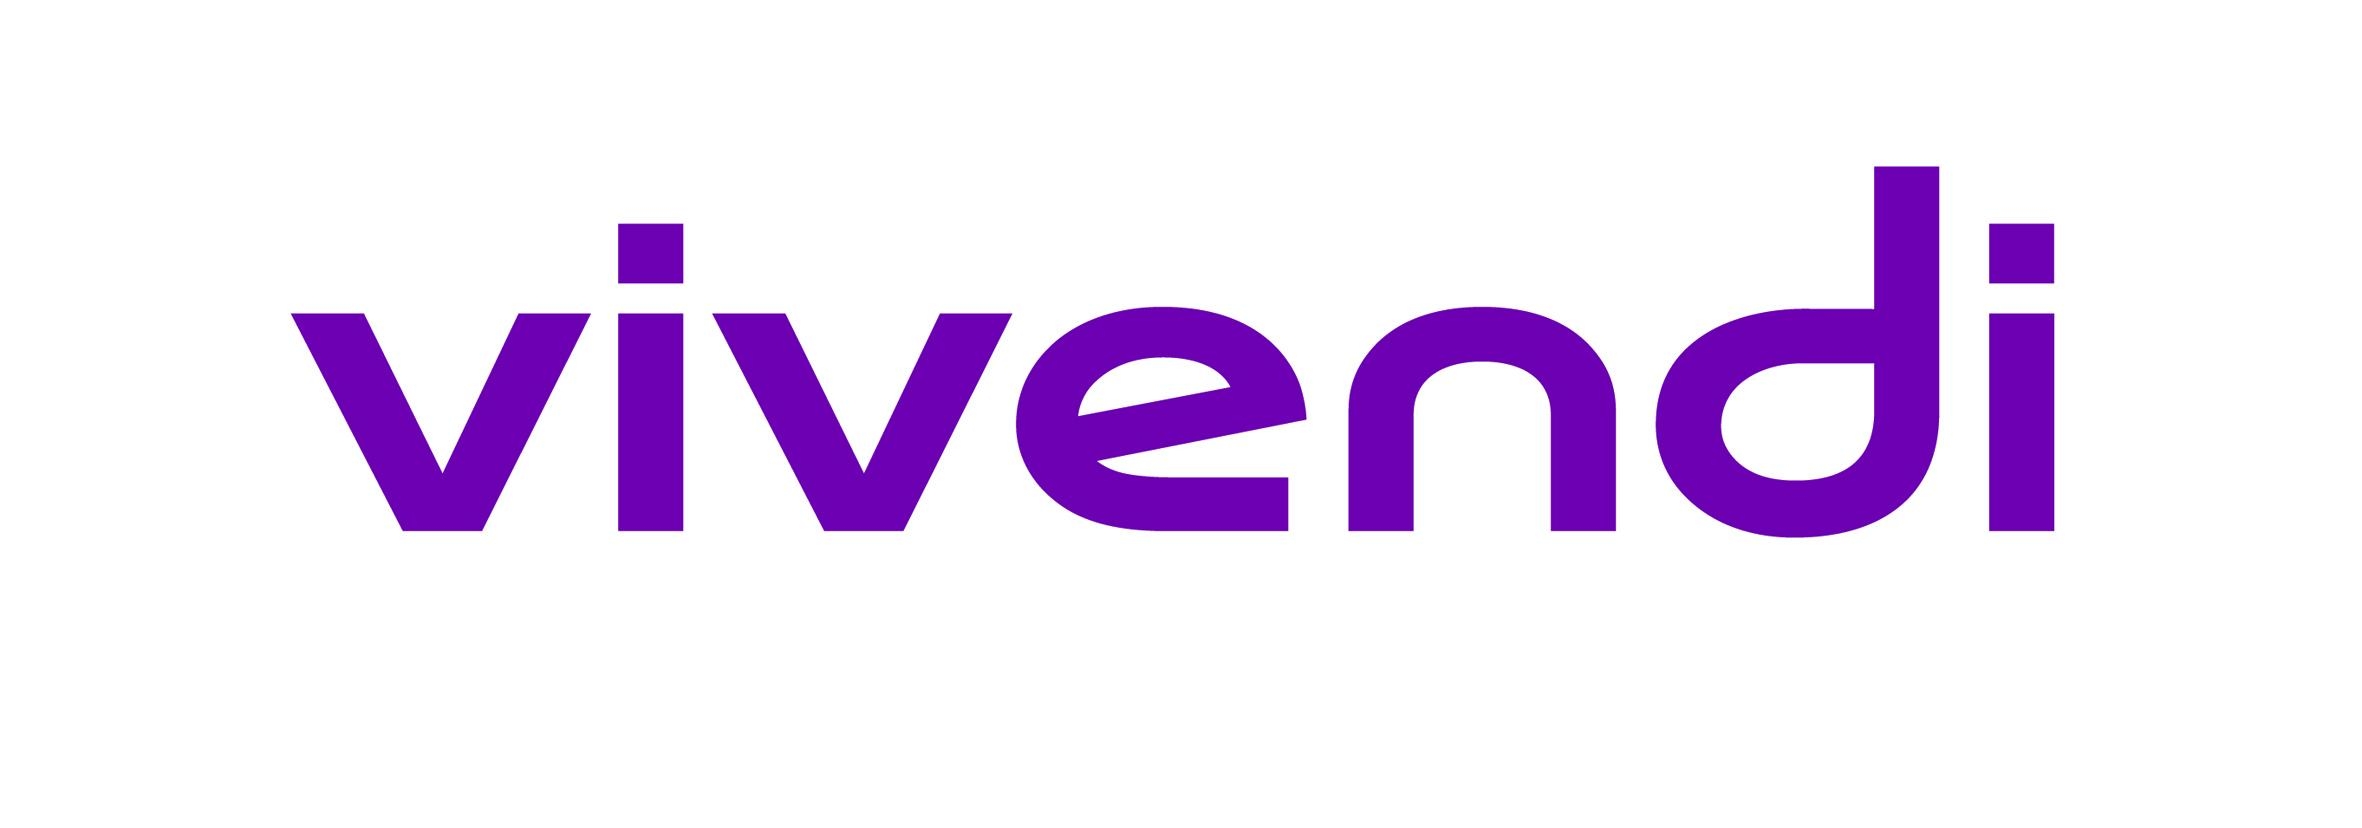 капитализация компании Vivendi 